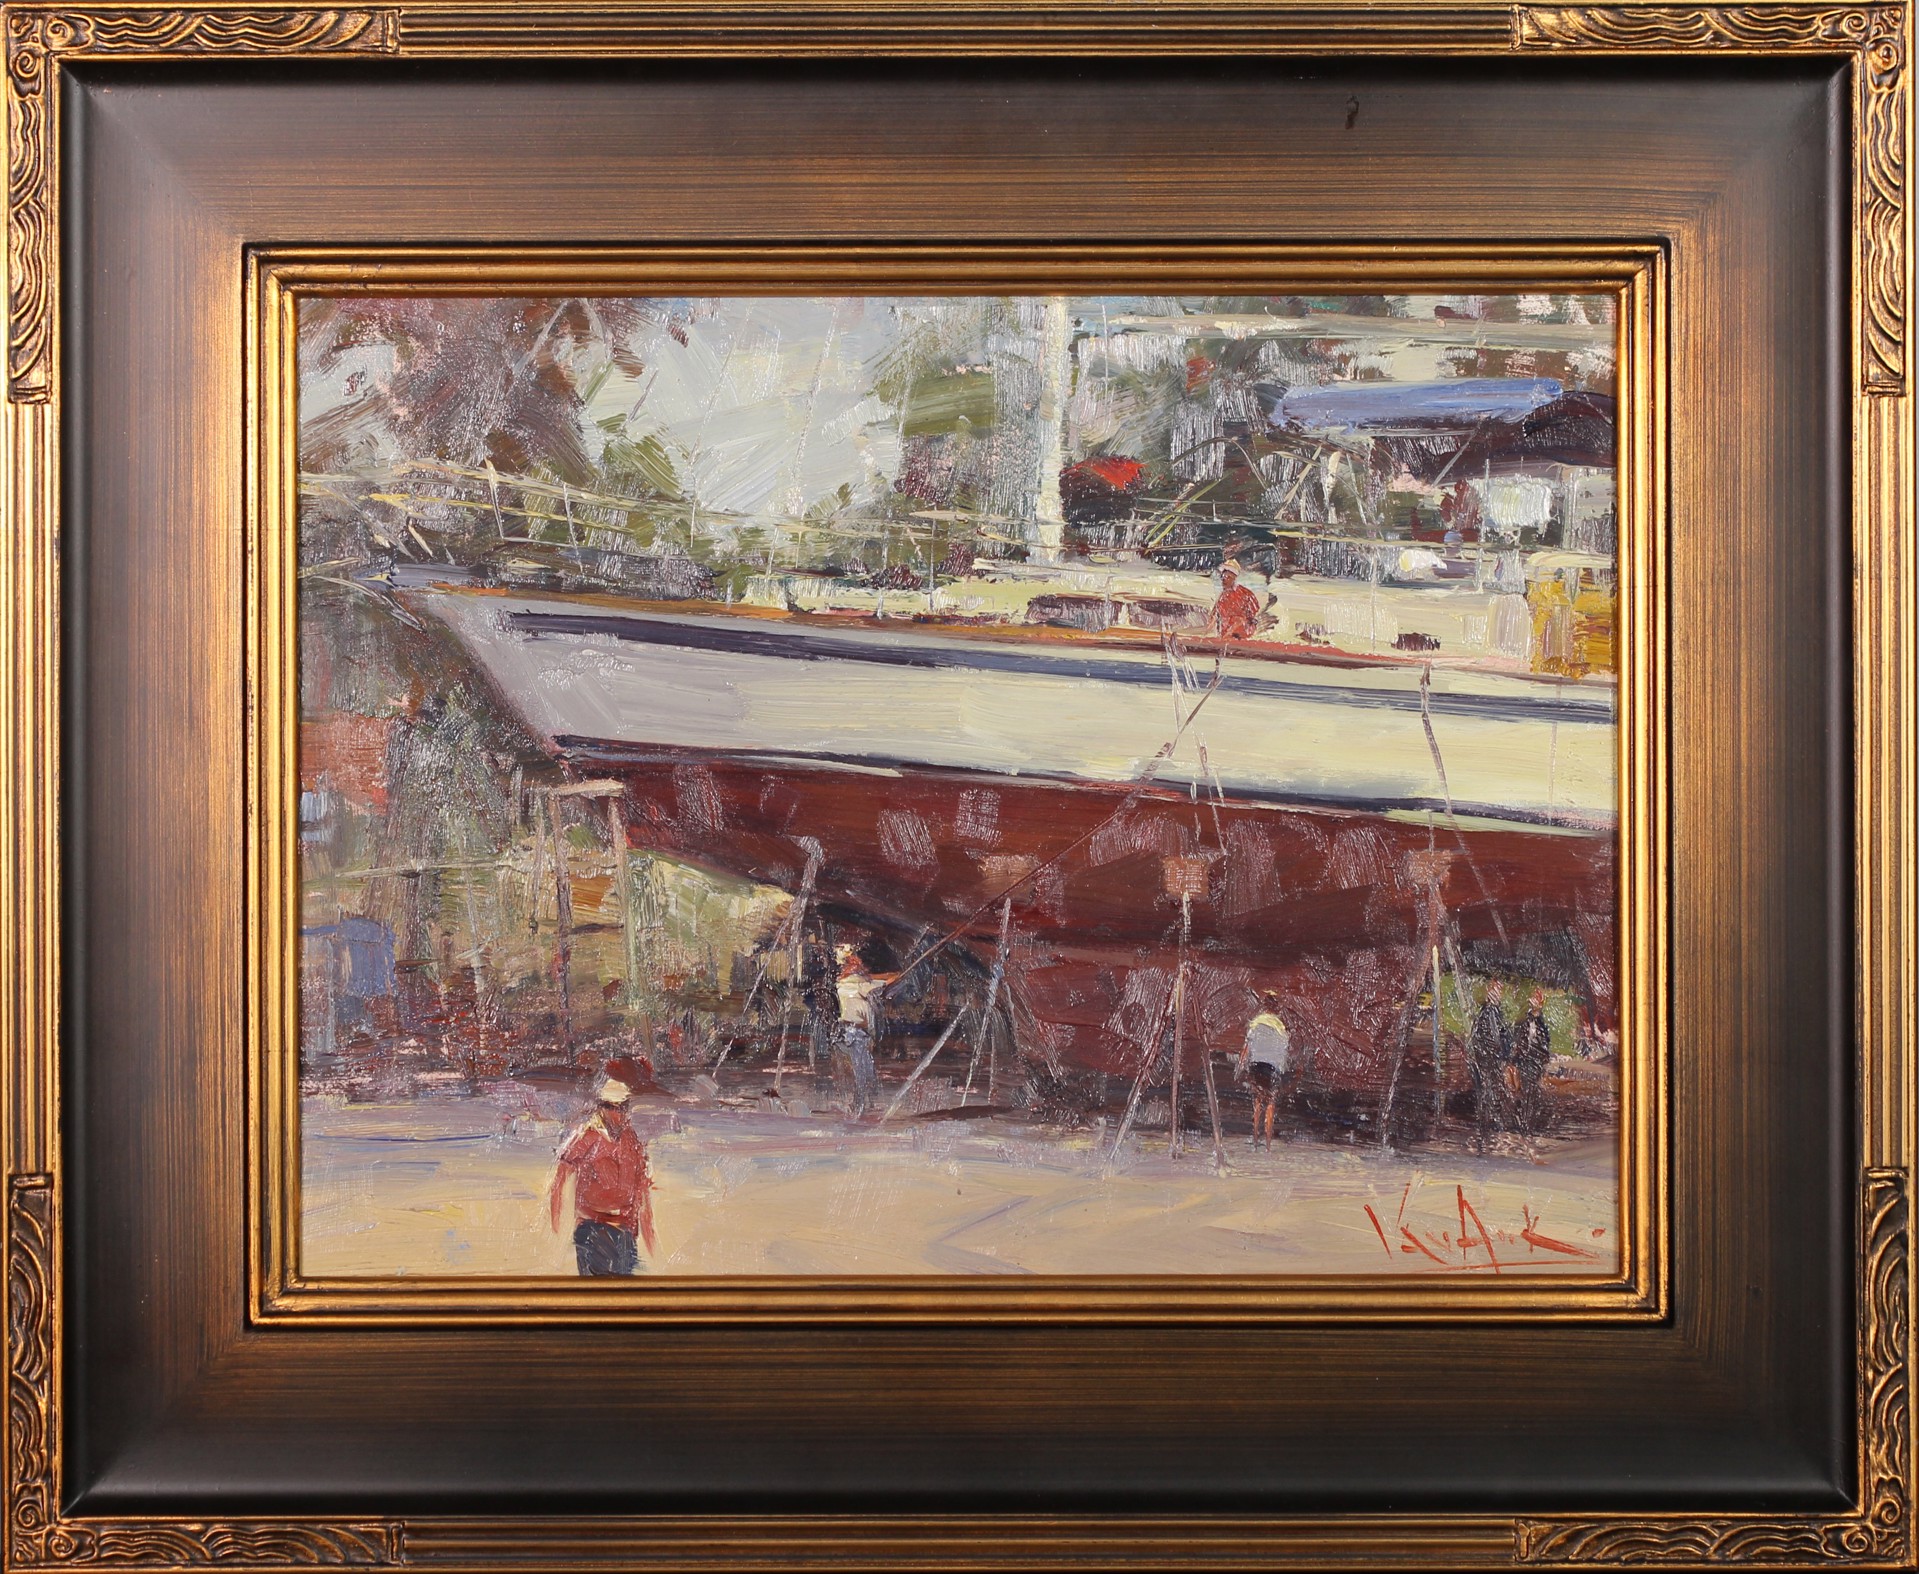 Boatyard by George Van Hook